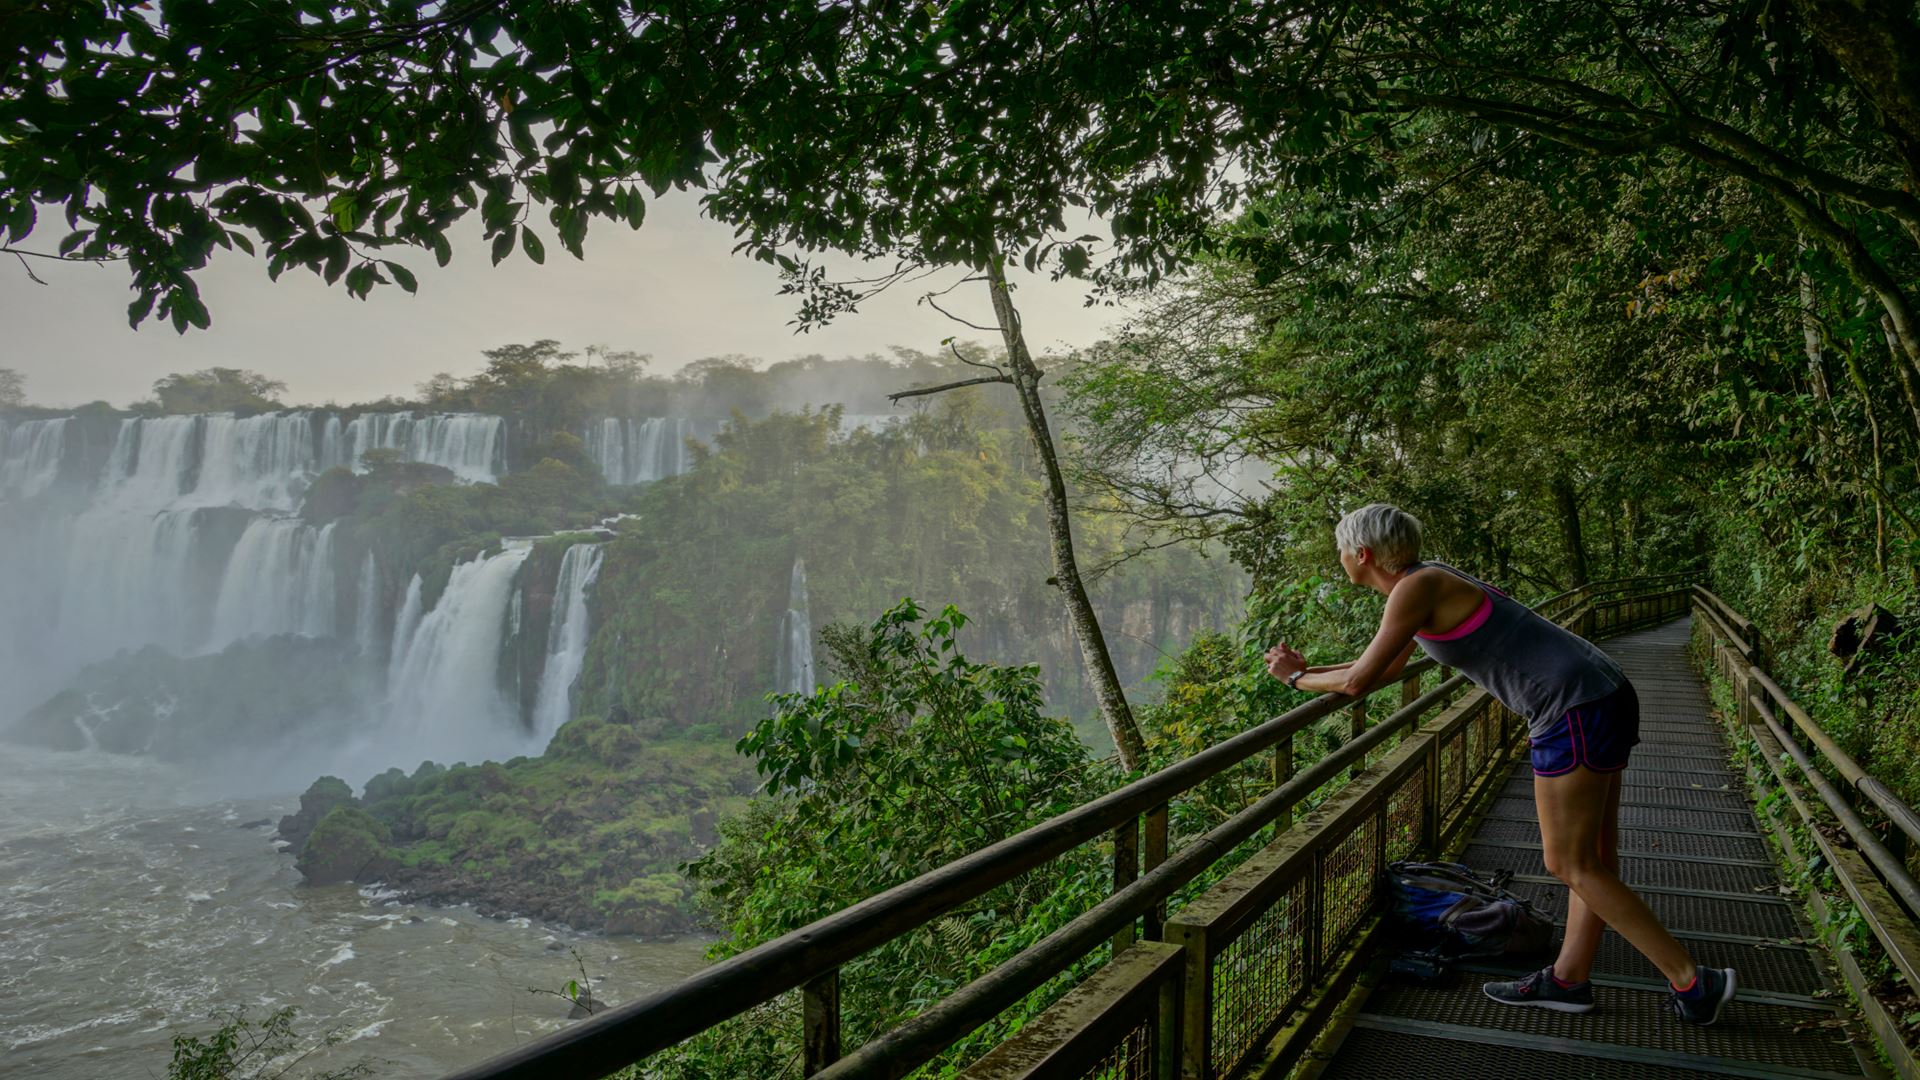 How to go to the Iguazu Falls